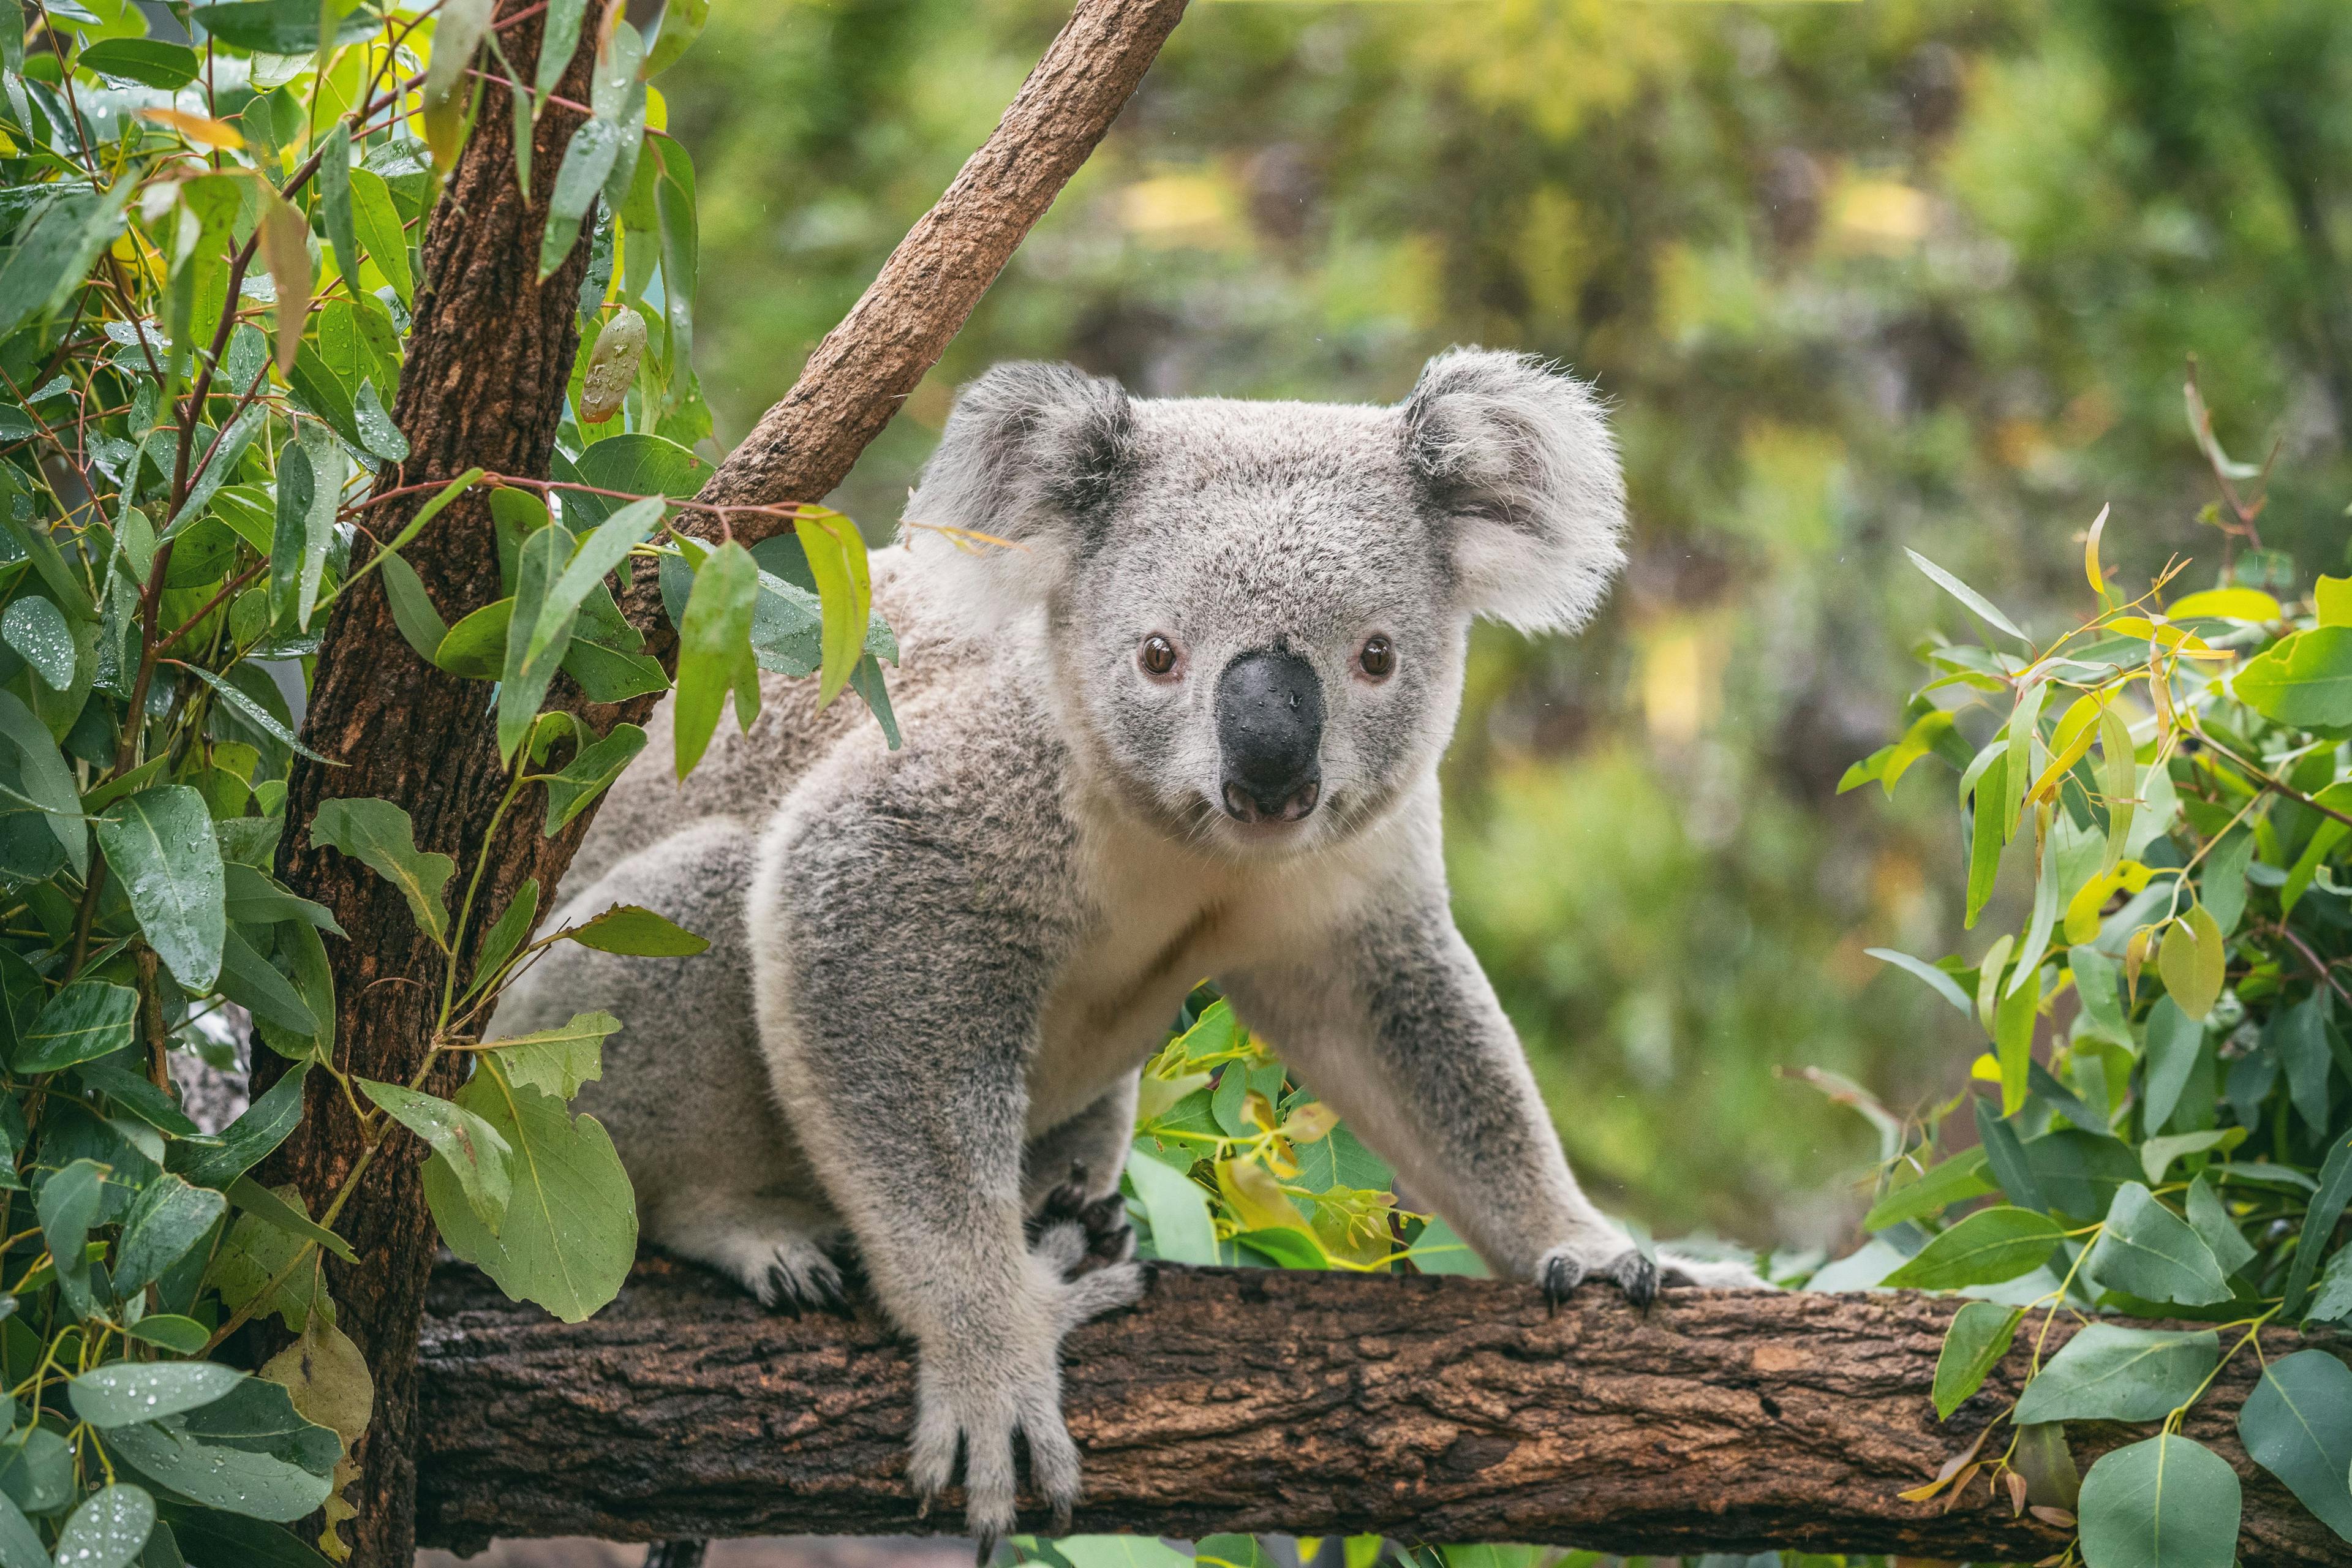 Study analyzes severity of injuries in koalas affected by Australian bushfire